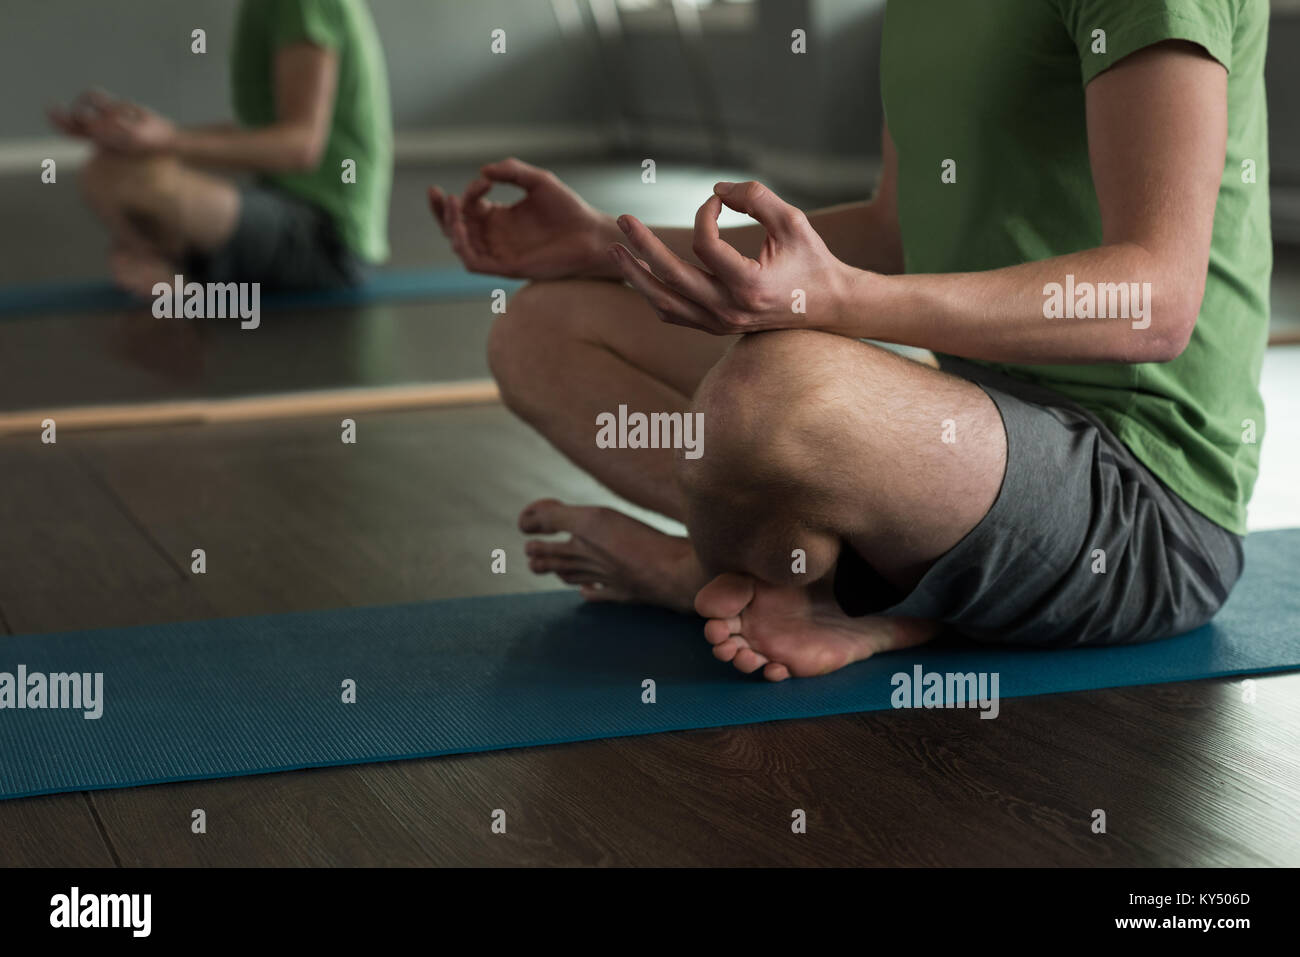 La section basse de man practicing yoga Banque D'Images